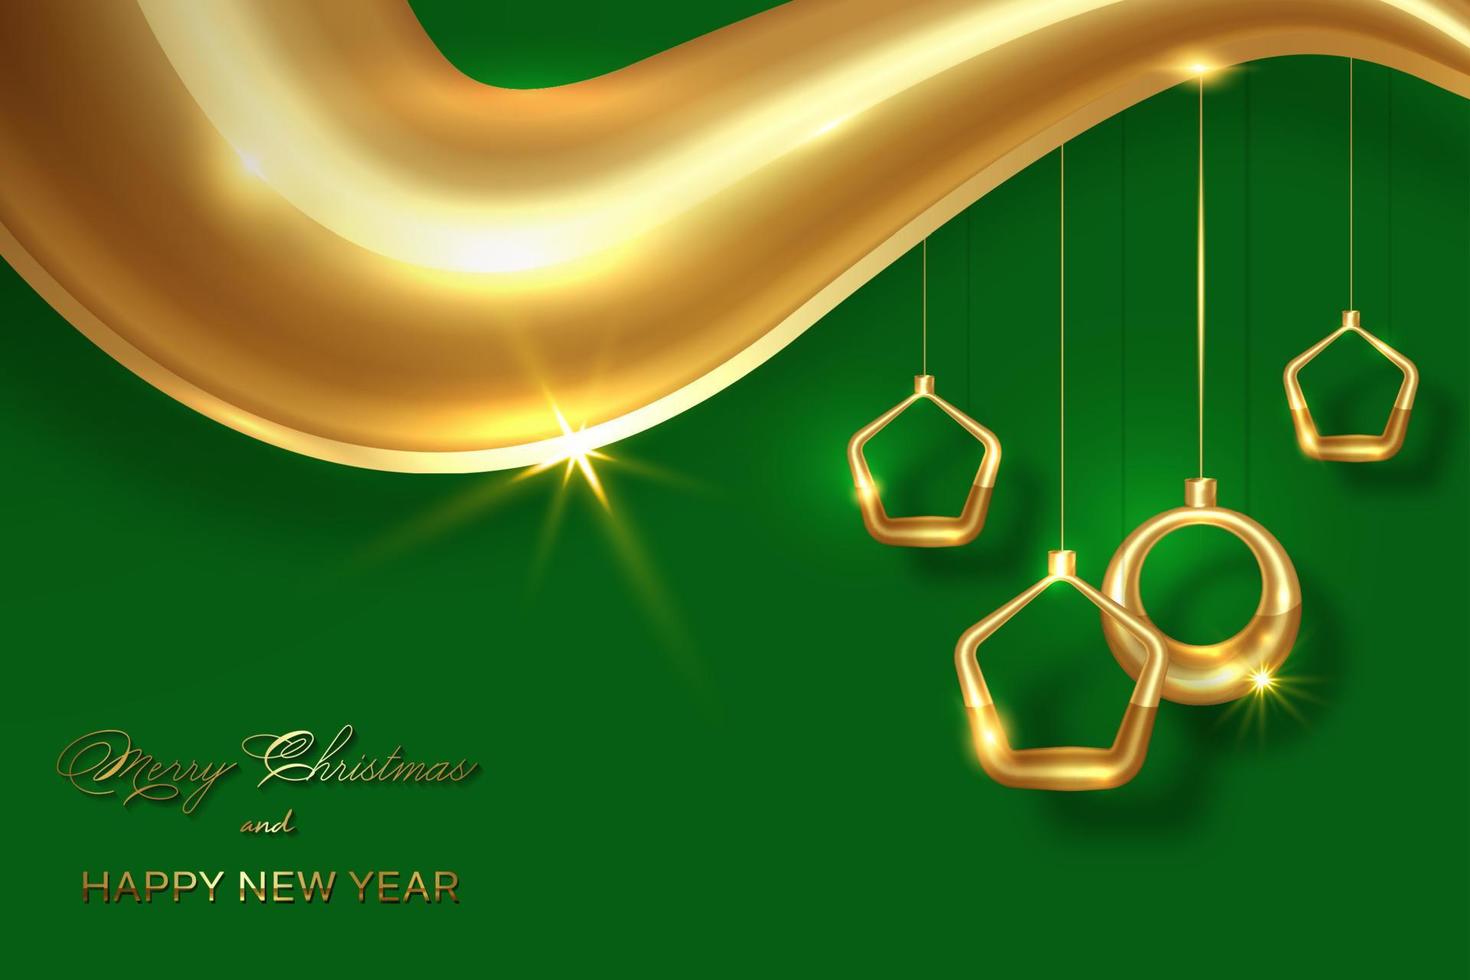 Kerstmis luxe vakantie banier met goud handgeschreven vrolijk Kerstmis en gelukkig nieuw jaar groeten en gouden Kerstmis ballen. vector illustratie Aan folie textuur, groen achtergrond